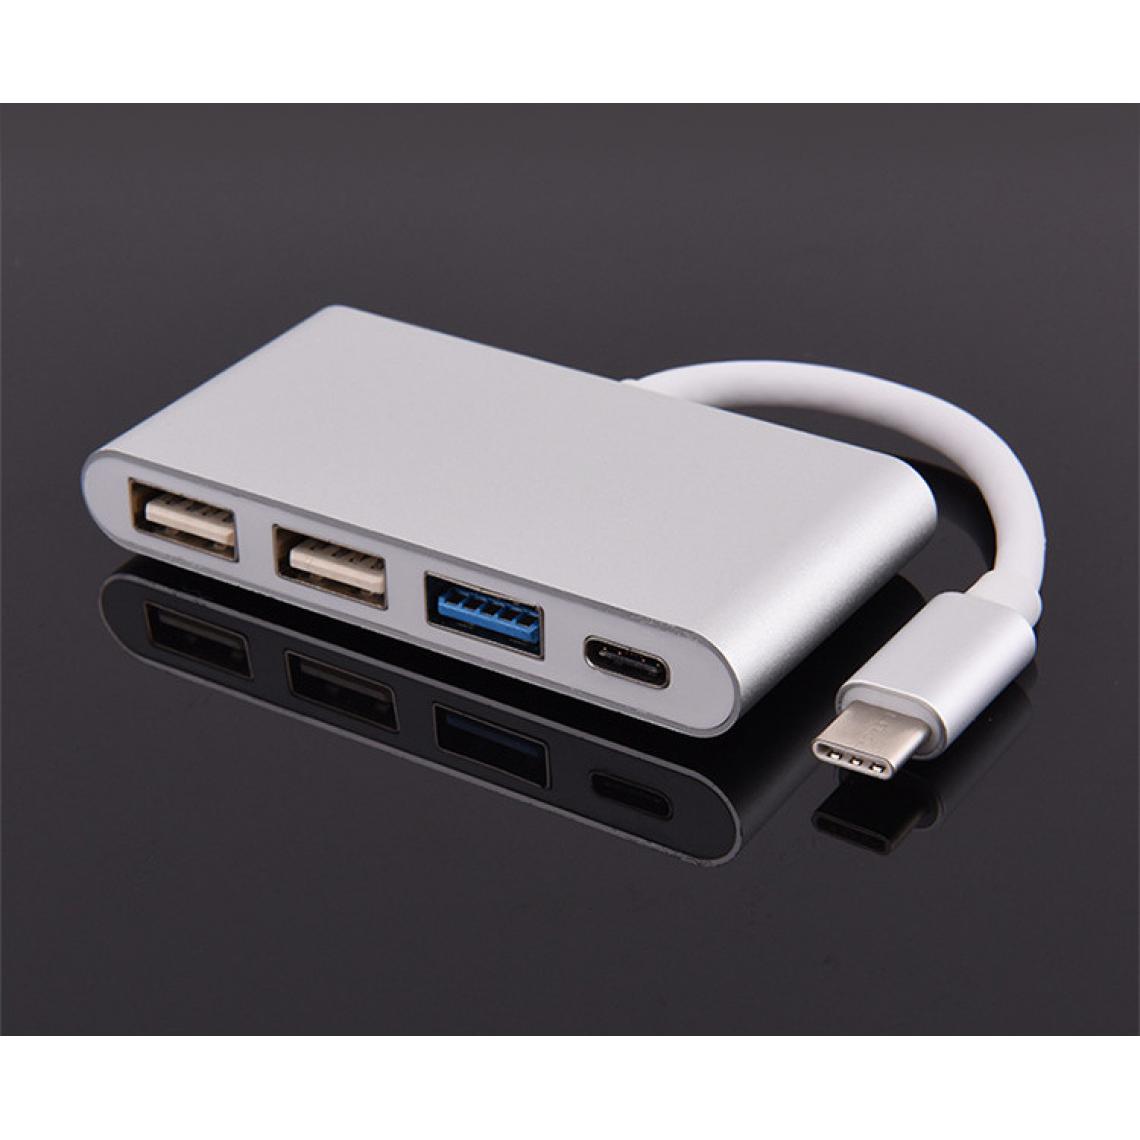 Shot - Multi Adaptateur 4 en 1 Type C pour HUAWEI P20 LITE Smartphone Hub 2 ports USB 2.0 1 Port USB 3.0 (ARGENT) - Hub